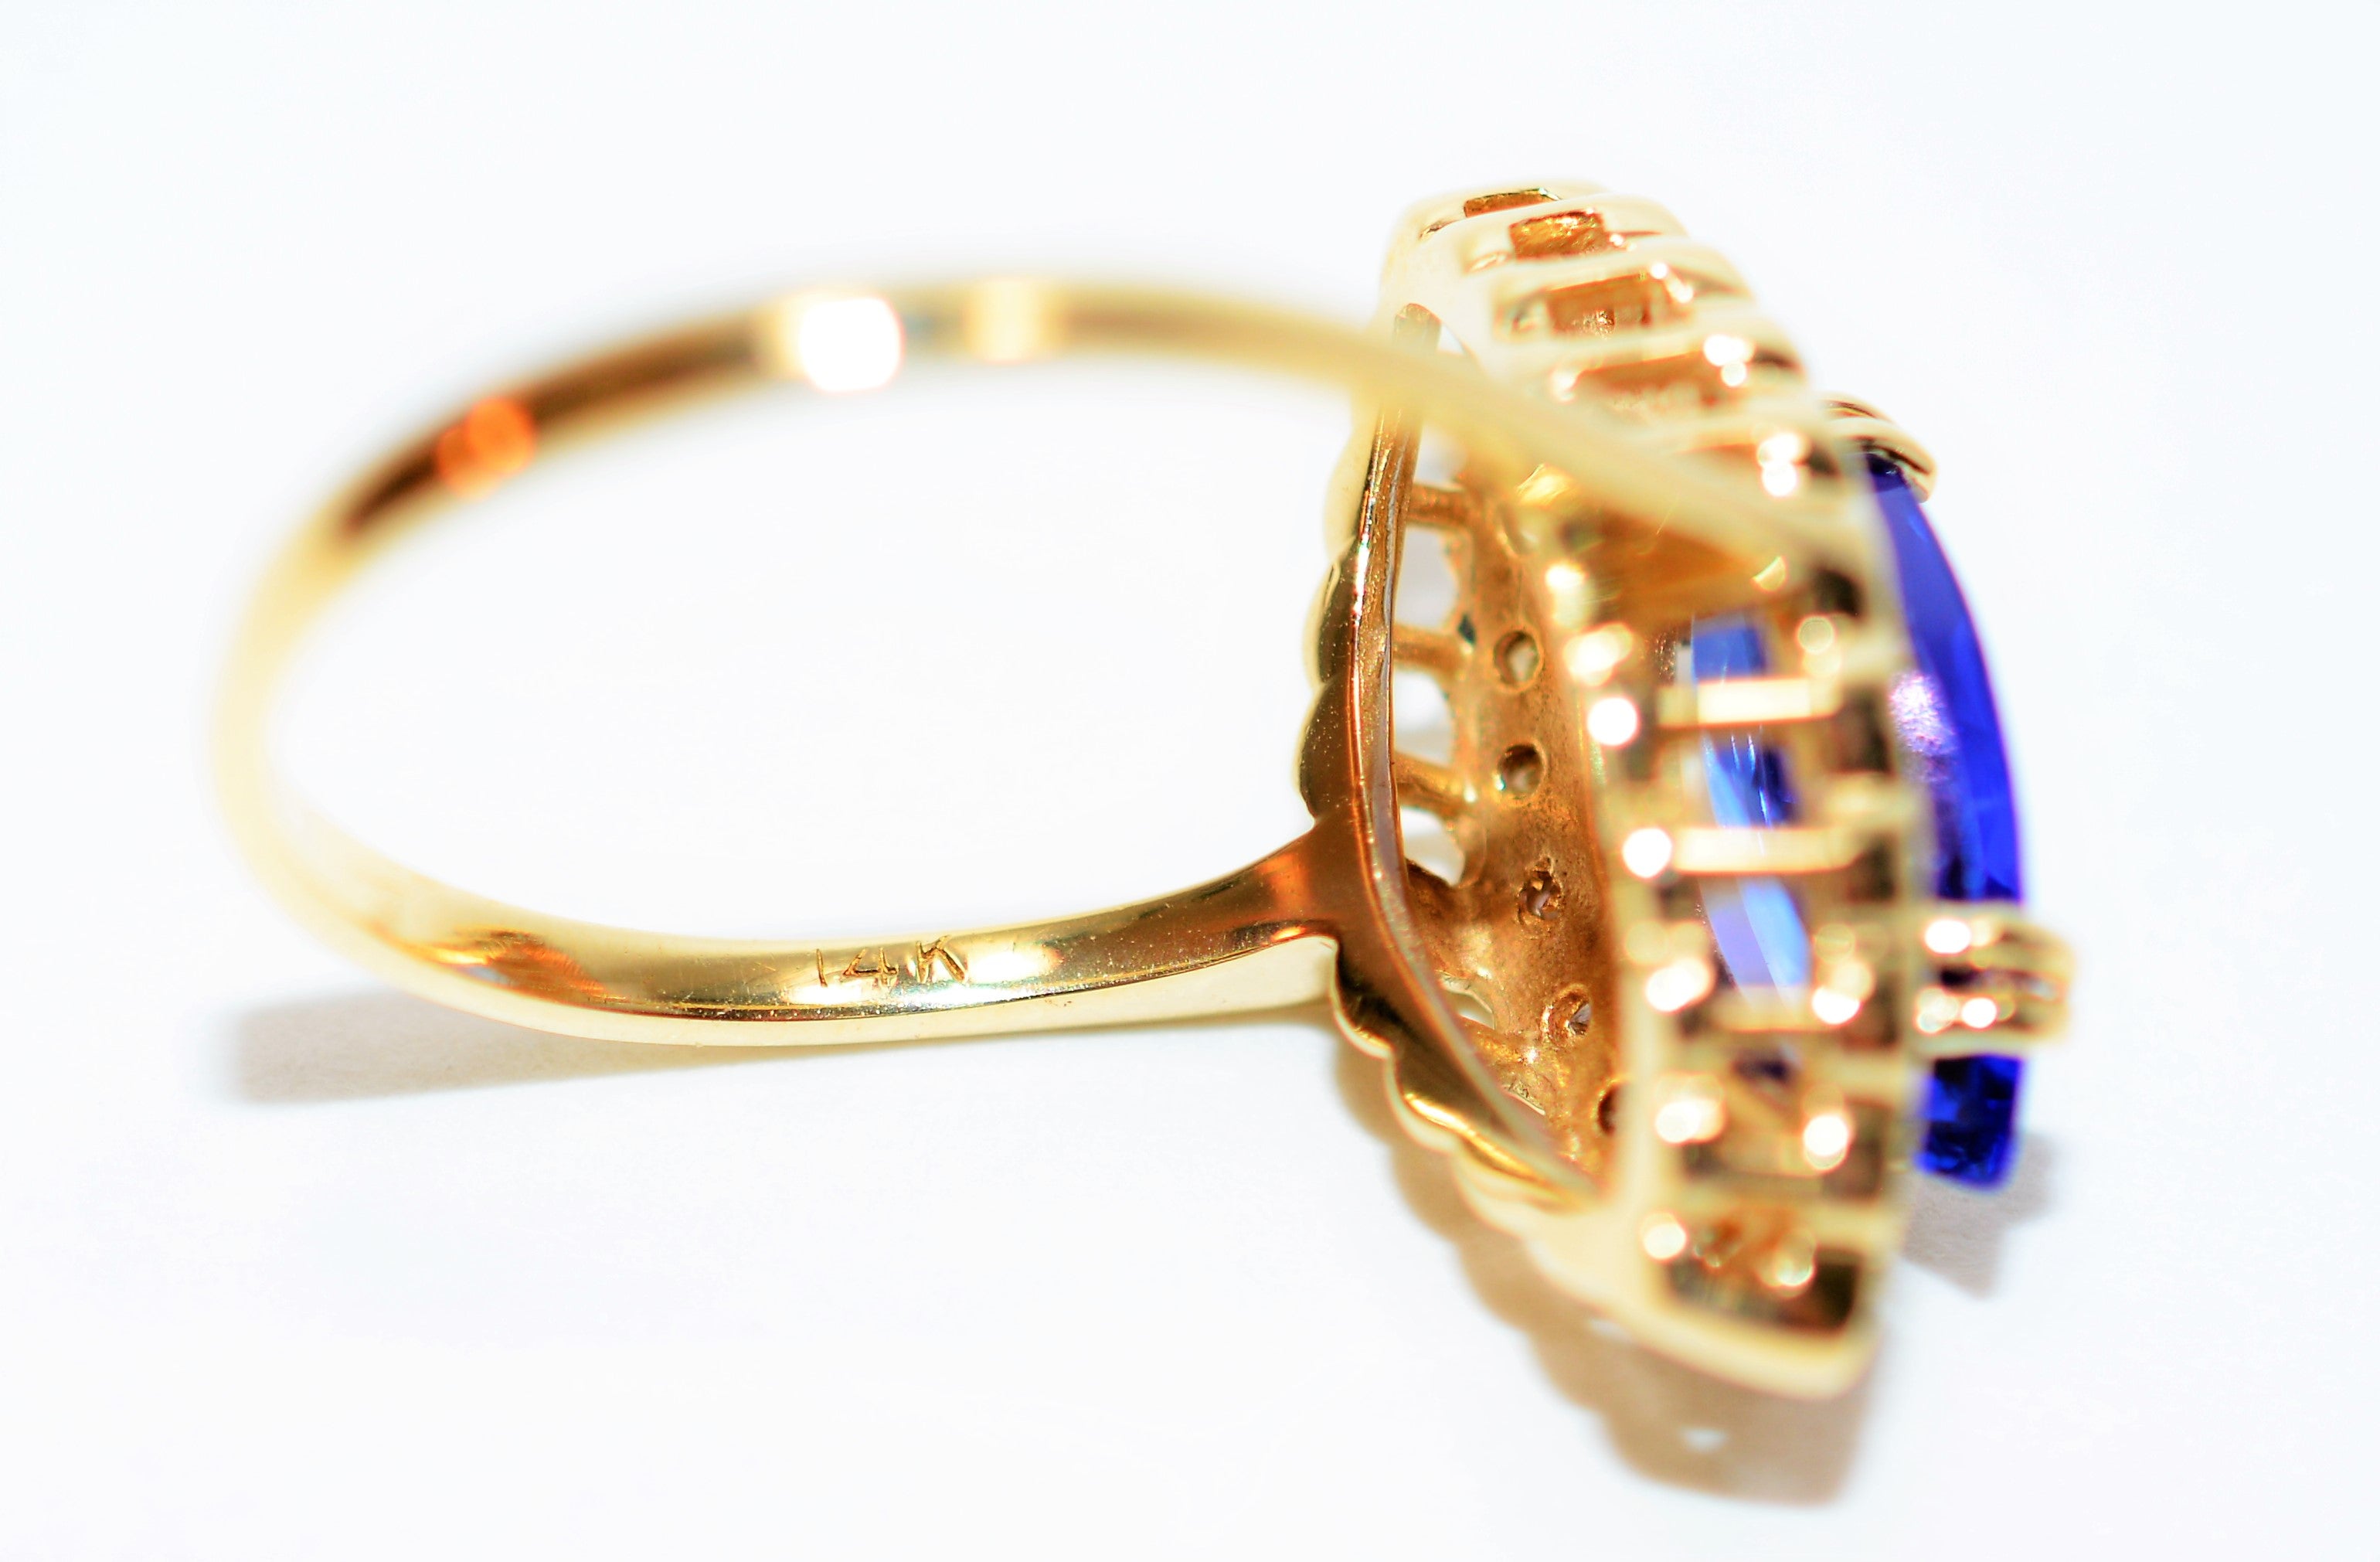 Natural D'Block Tanzanite & Diamond Ring 14K Solid Gold 2.03tcw Tanzanite Ring Gemstone Ring December Birthstone Ring Marquise Ring Vintage